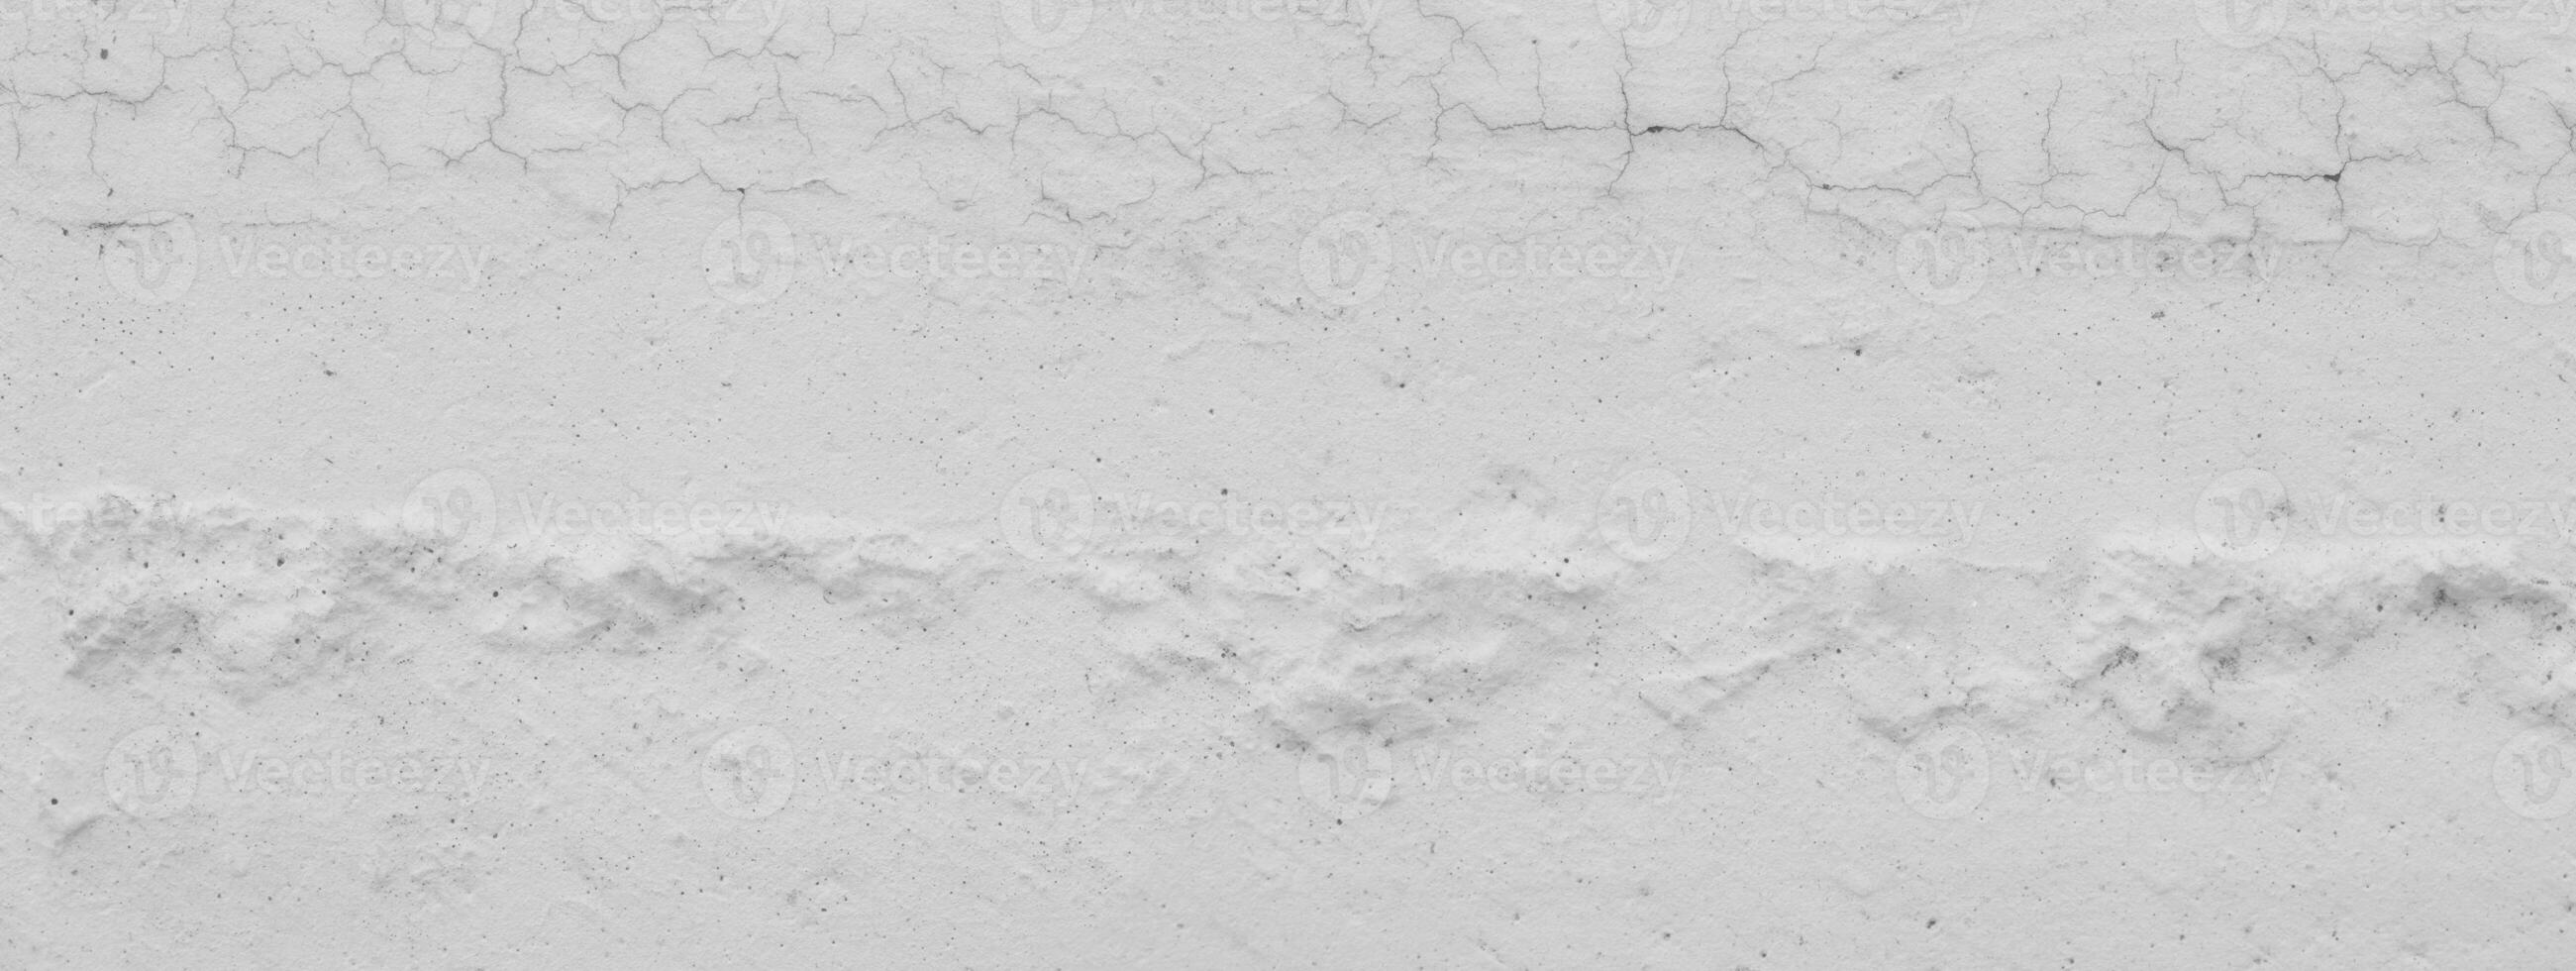 Weiß Mauer Beton Hintergrund. alt Zement Textur geknackt, Weiss, grau Jahrgang Hintergrund abstrakt Grunge Hintergrund foto